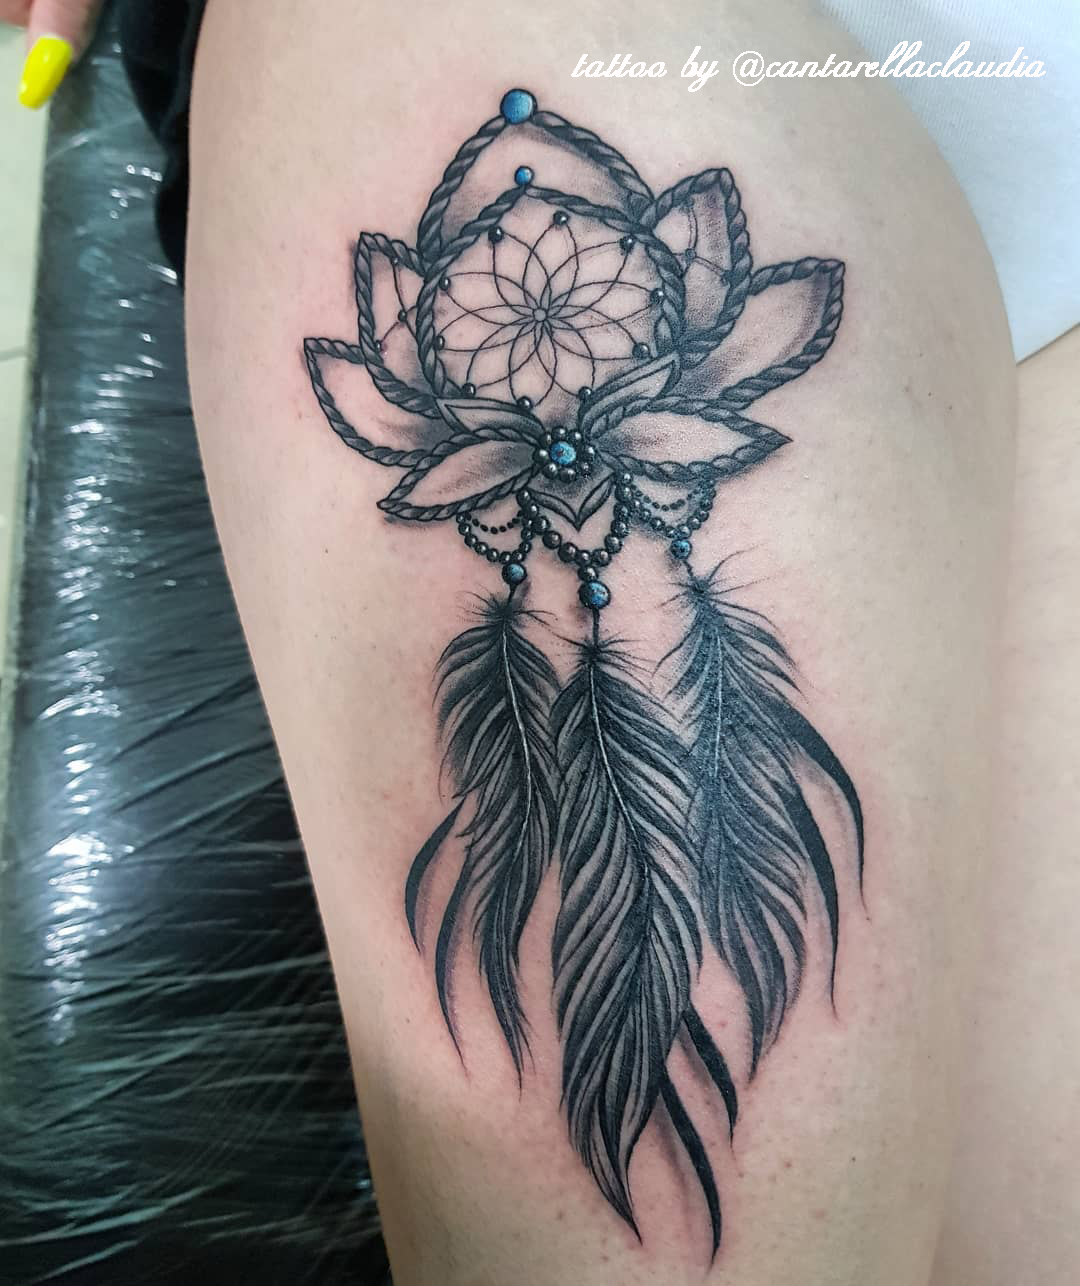 tatuaggio fiore di loto acchiappasogni e piume by @cantarellaclaudia